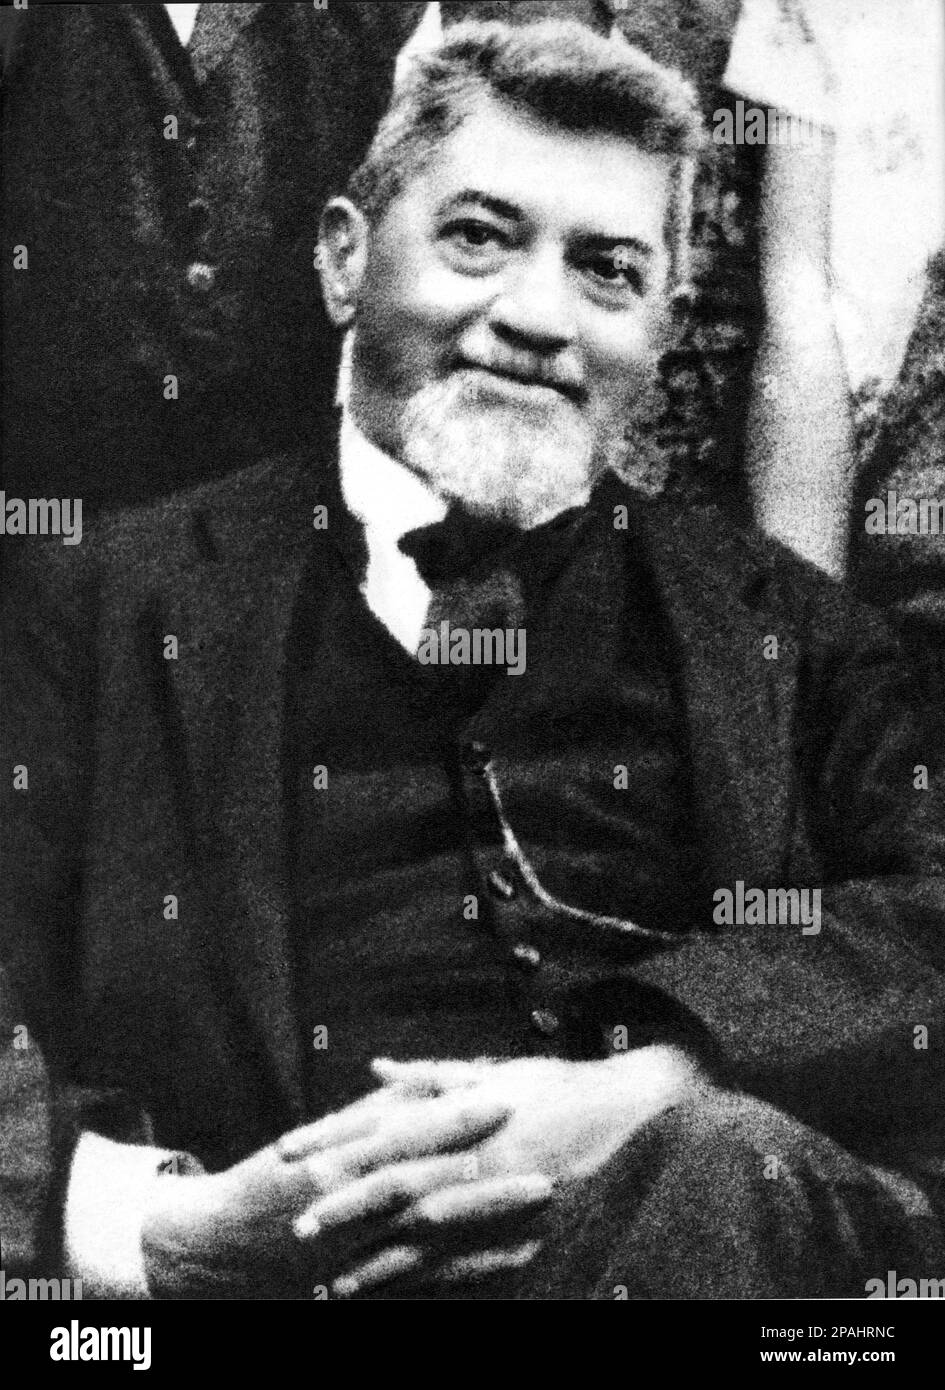 The italian politician Socialist , sociologist  and  poet  FILIPPO TURATI  ( 1857 – 1932 ) , lover of socialist Anna Kulischov  - Partito Socialista Rivoluzionario Italiano  - POLITICO - POLITICA - PSI - POLITIC - SOCIALIST - SOCIALISMO - SOCIALISM  - foto storiche - foto storica -  baffi  - moustache - portrait - ritratto - lens - cravatta - tie  - beard - barba  - ANTIFASCISTA - ANTIFASCISMO ---- Archivio GBB Stock Photo